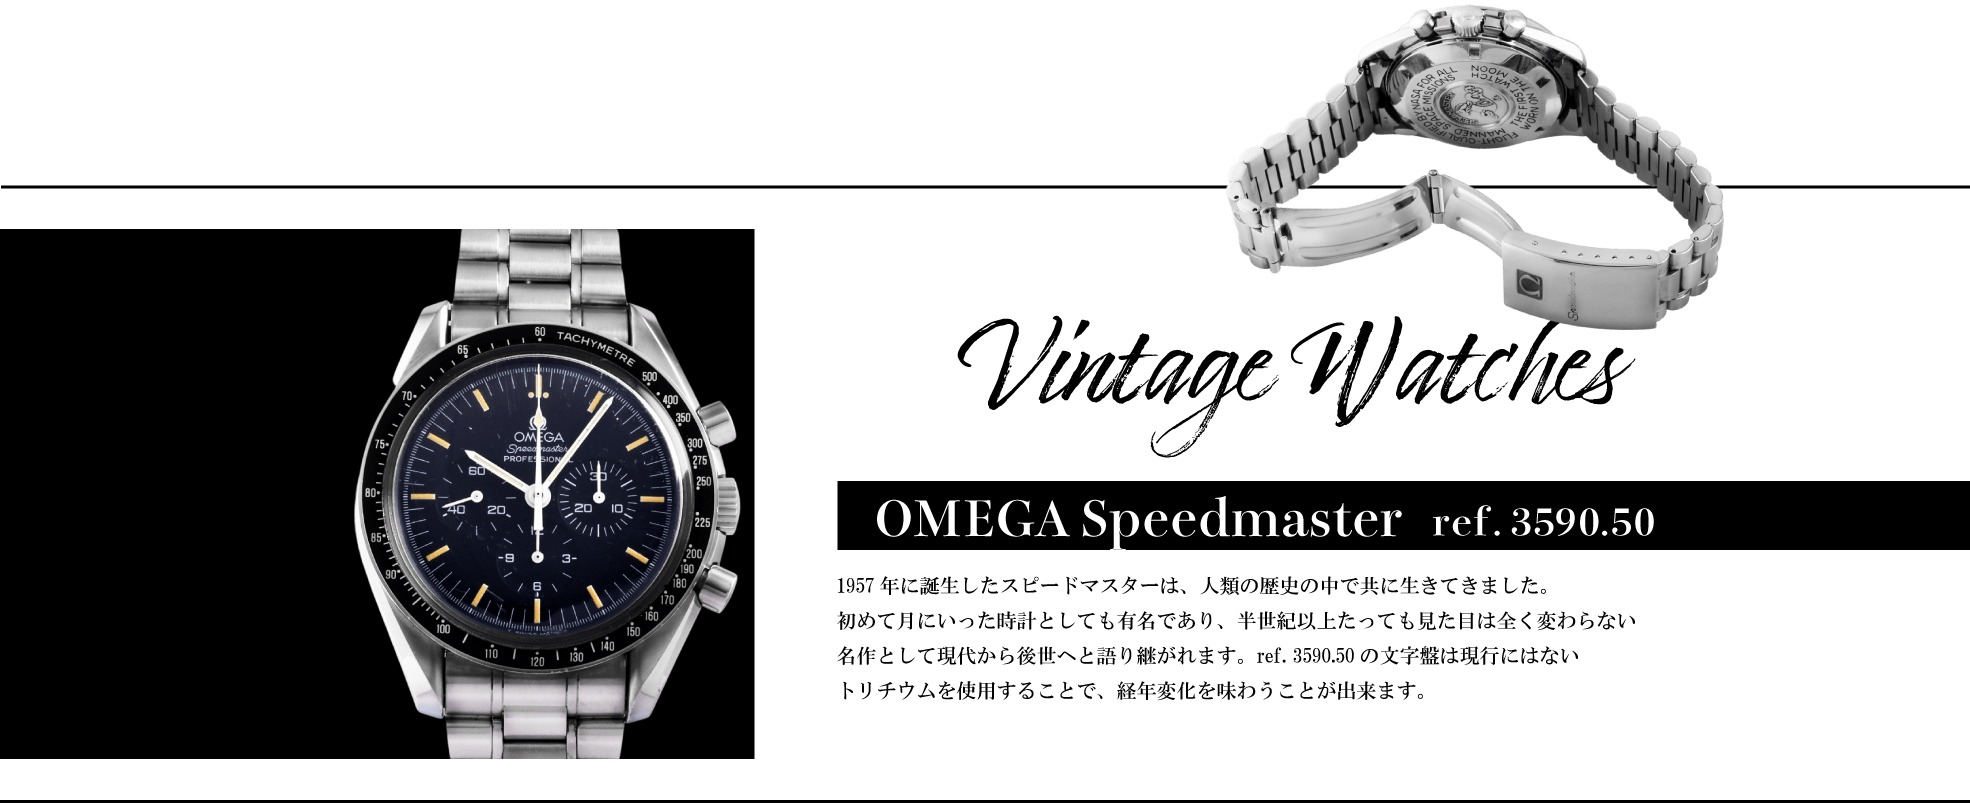 omega speedmaster